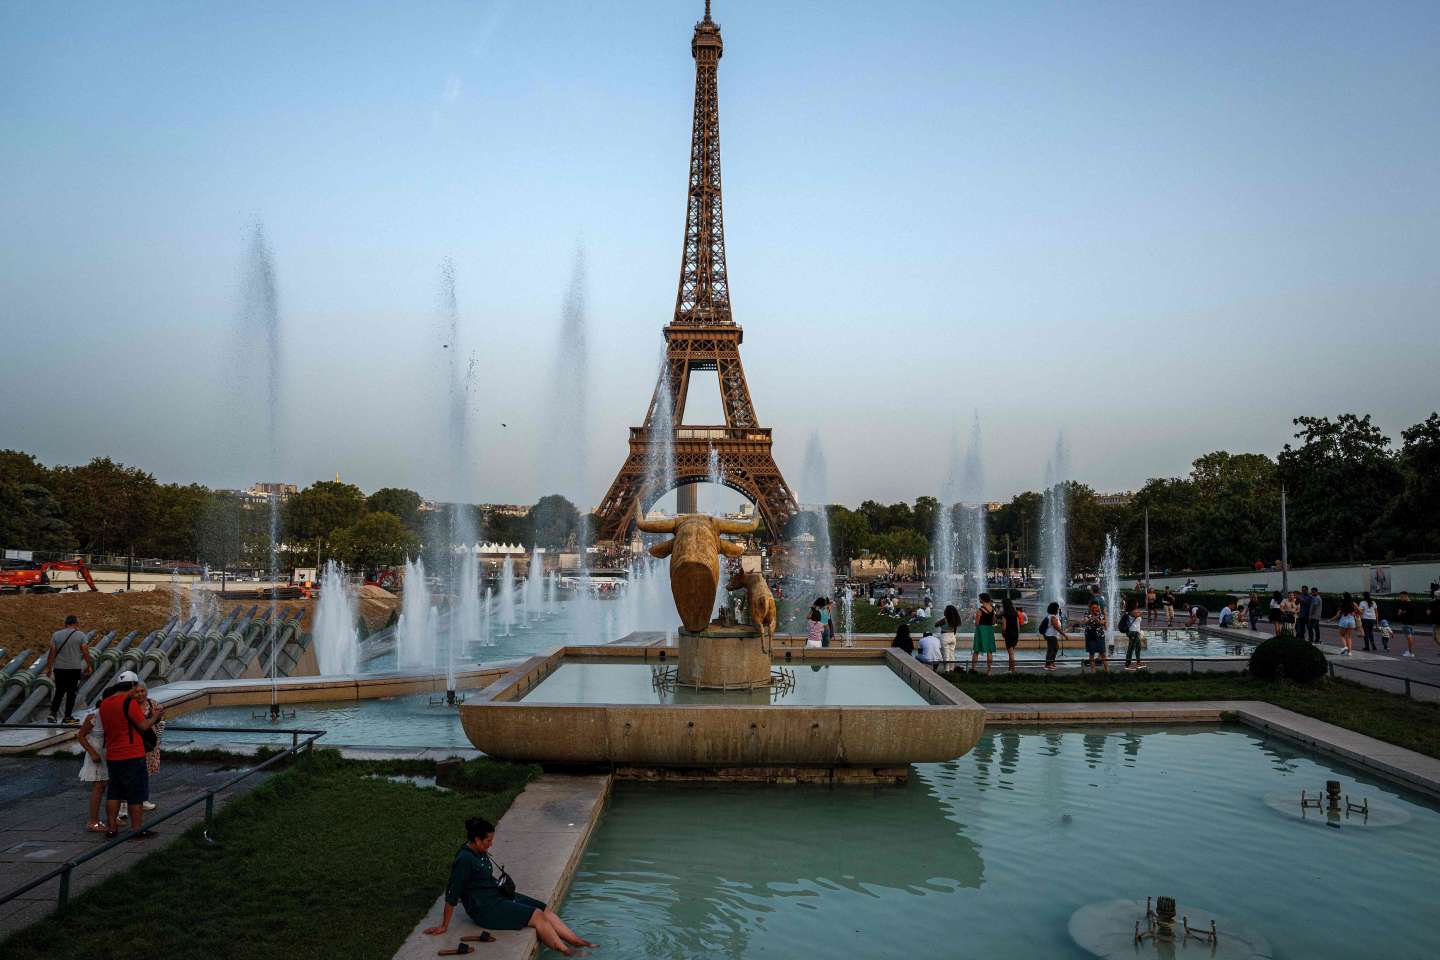 Des records de chaleur attendus en France lundi, selon Météo-France